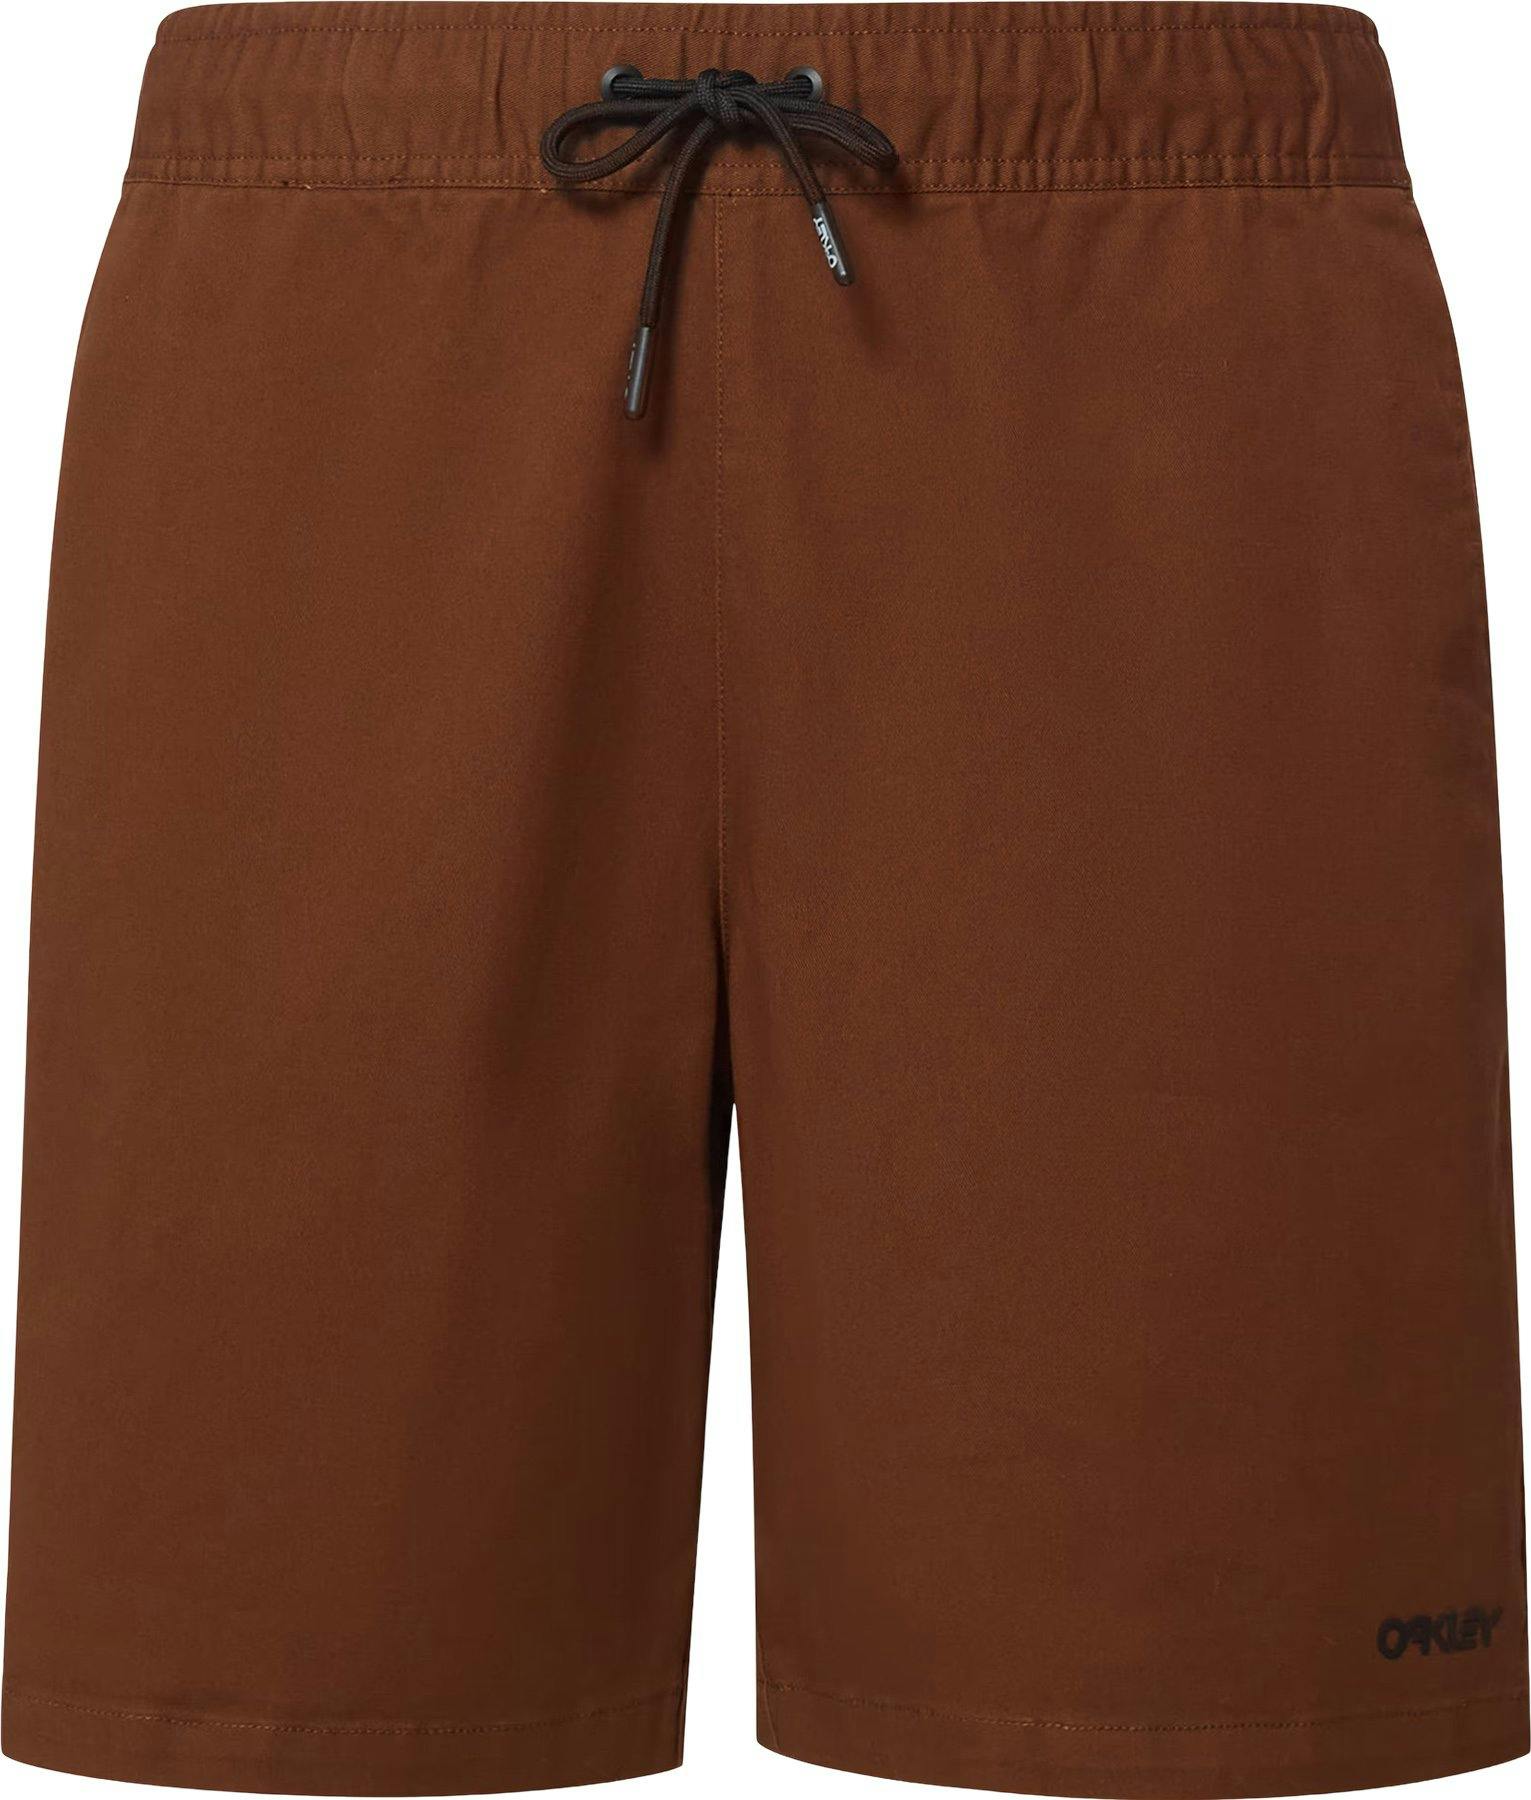 Product image for Marine Park Hybrid Shorts 19" - Men's